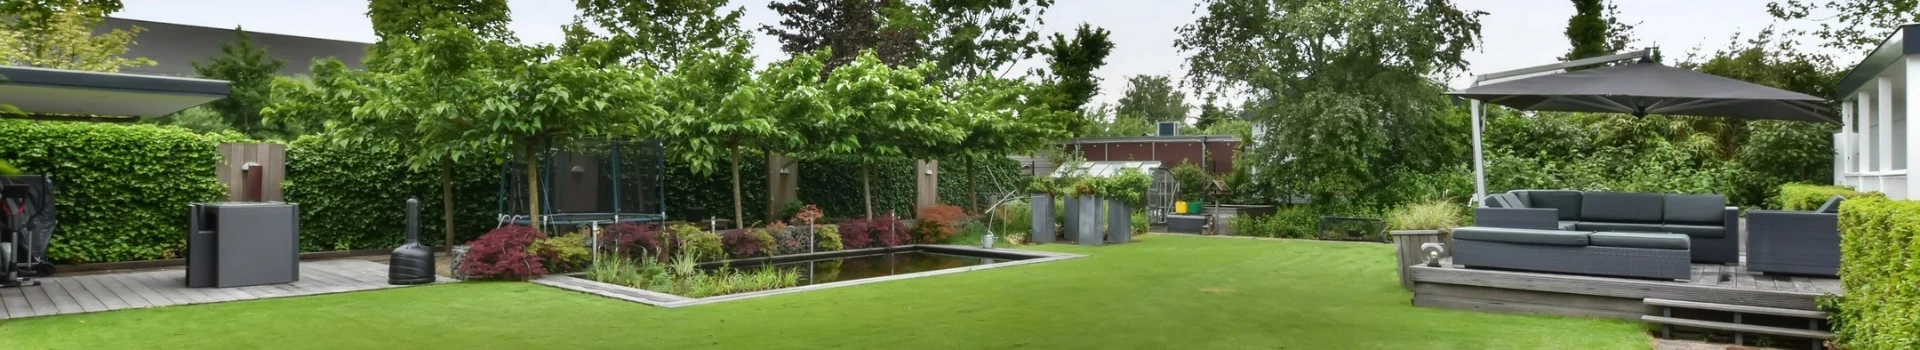 ozdobny ogród za domem